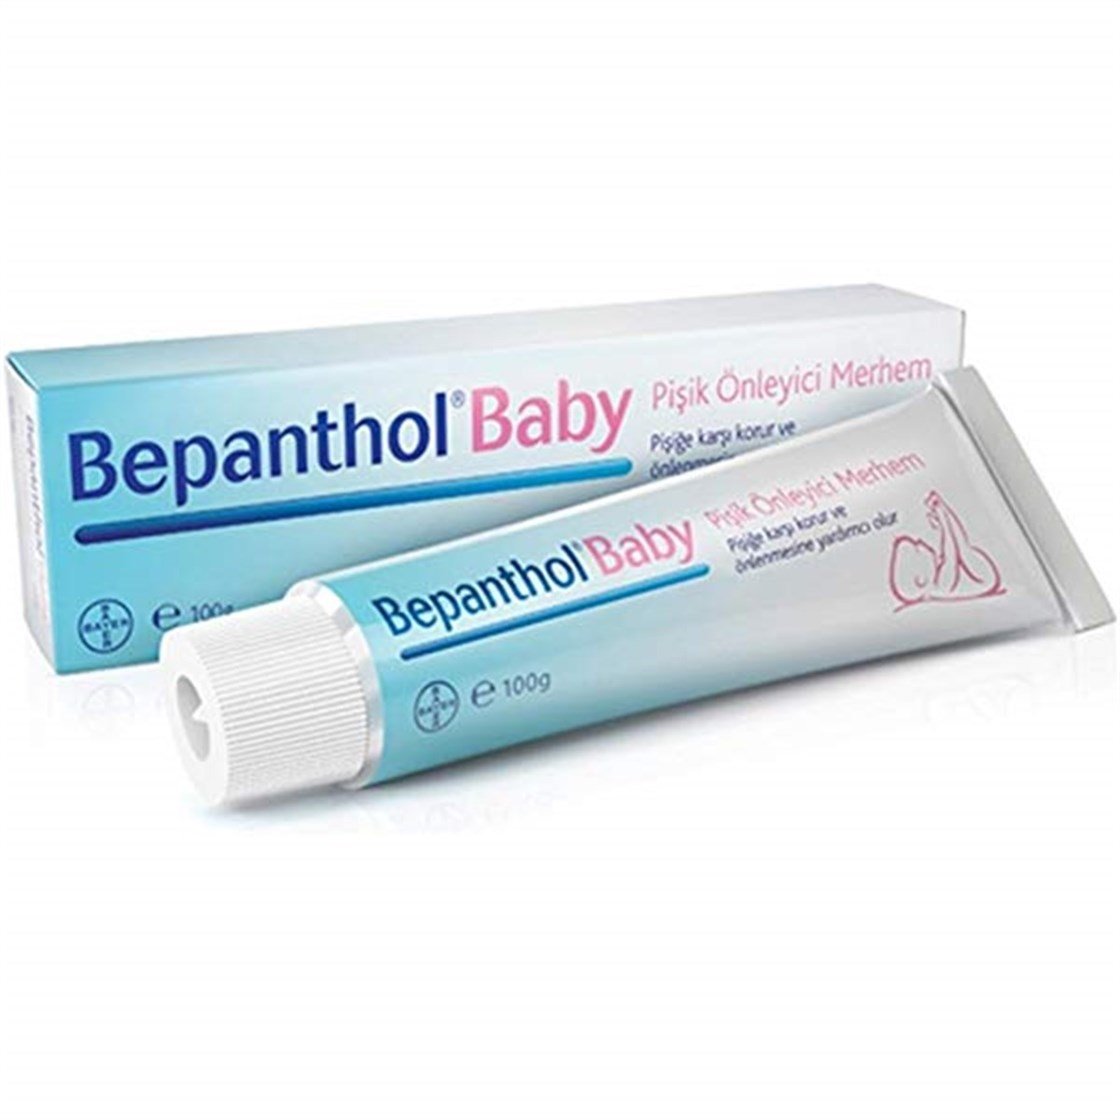 Bepanthol Baby Pişik Önleyici Merhem 100 gr | Dermoailem.com